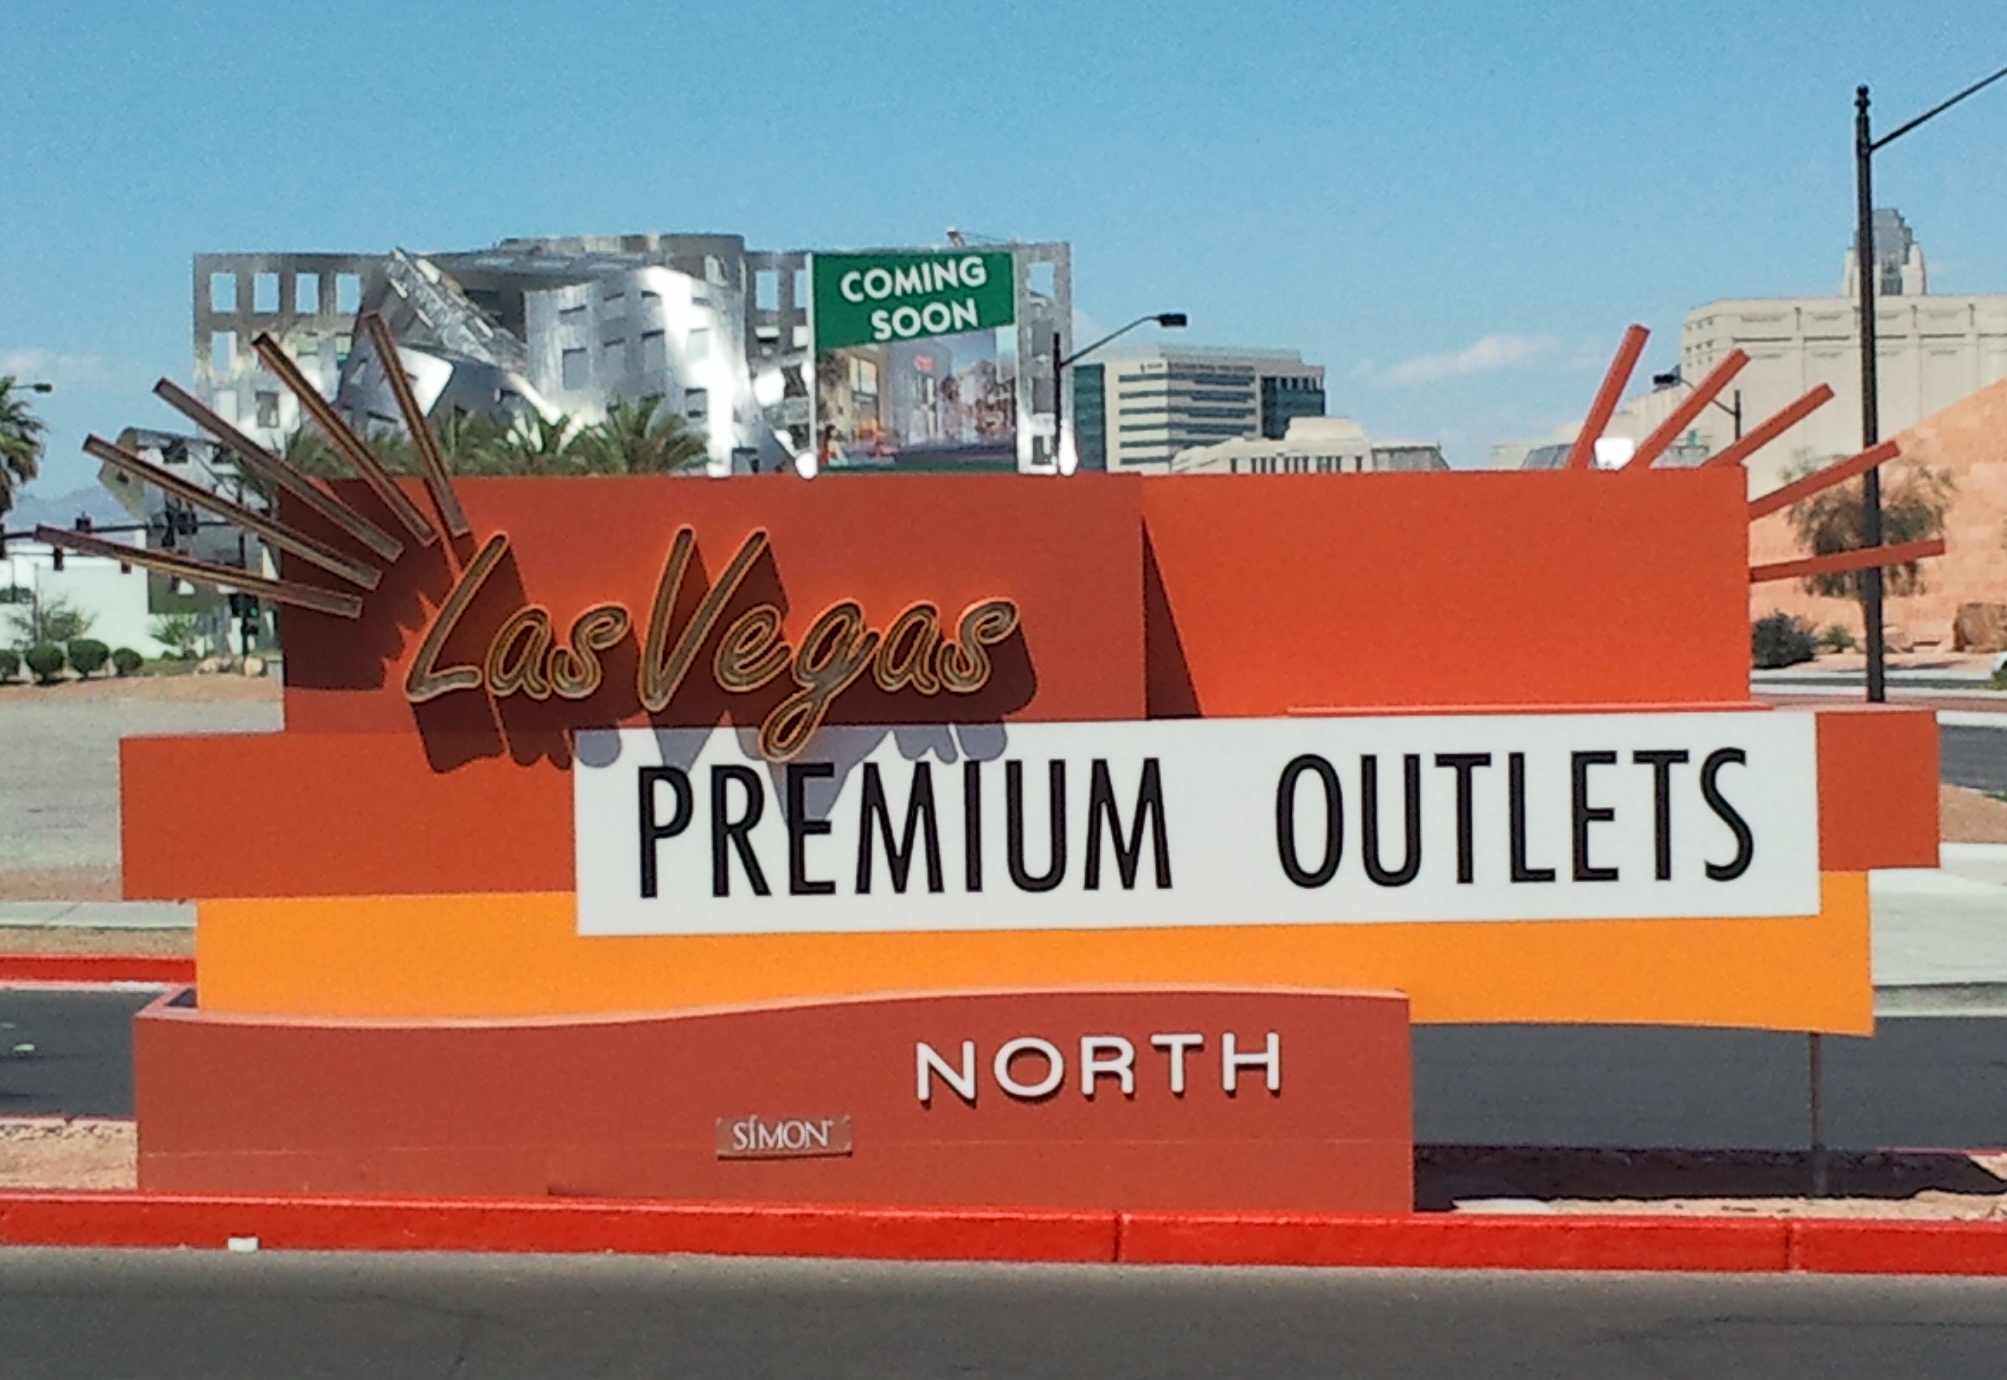 Las Vegas Premium Outlets North 